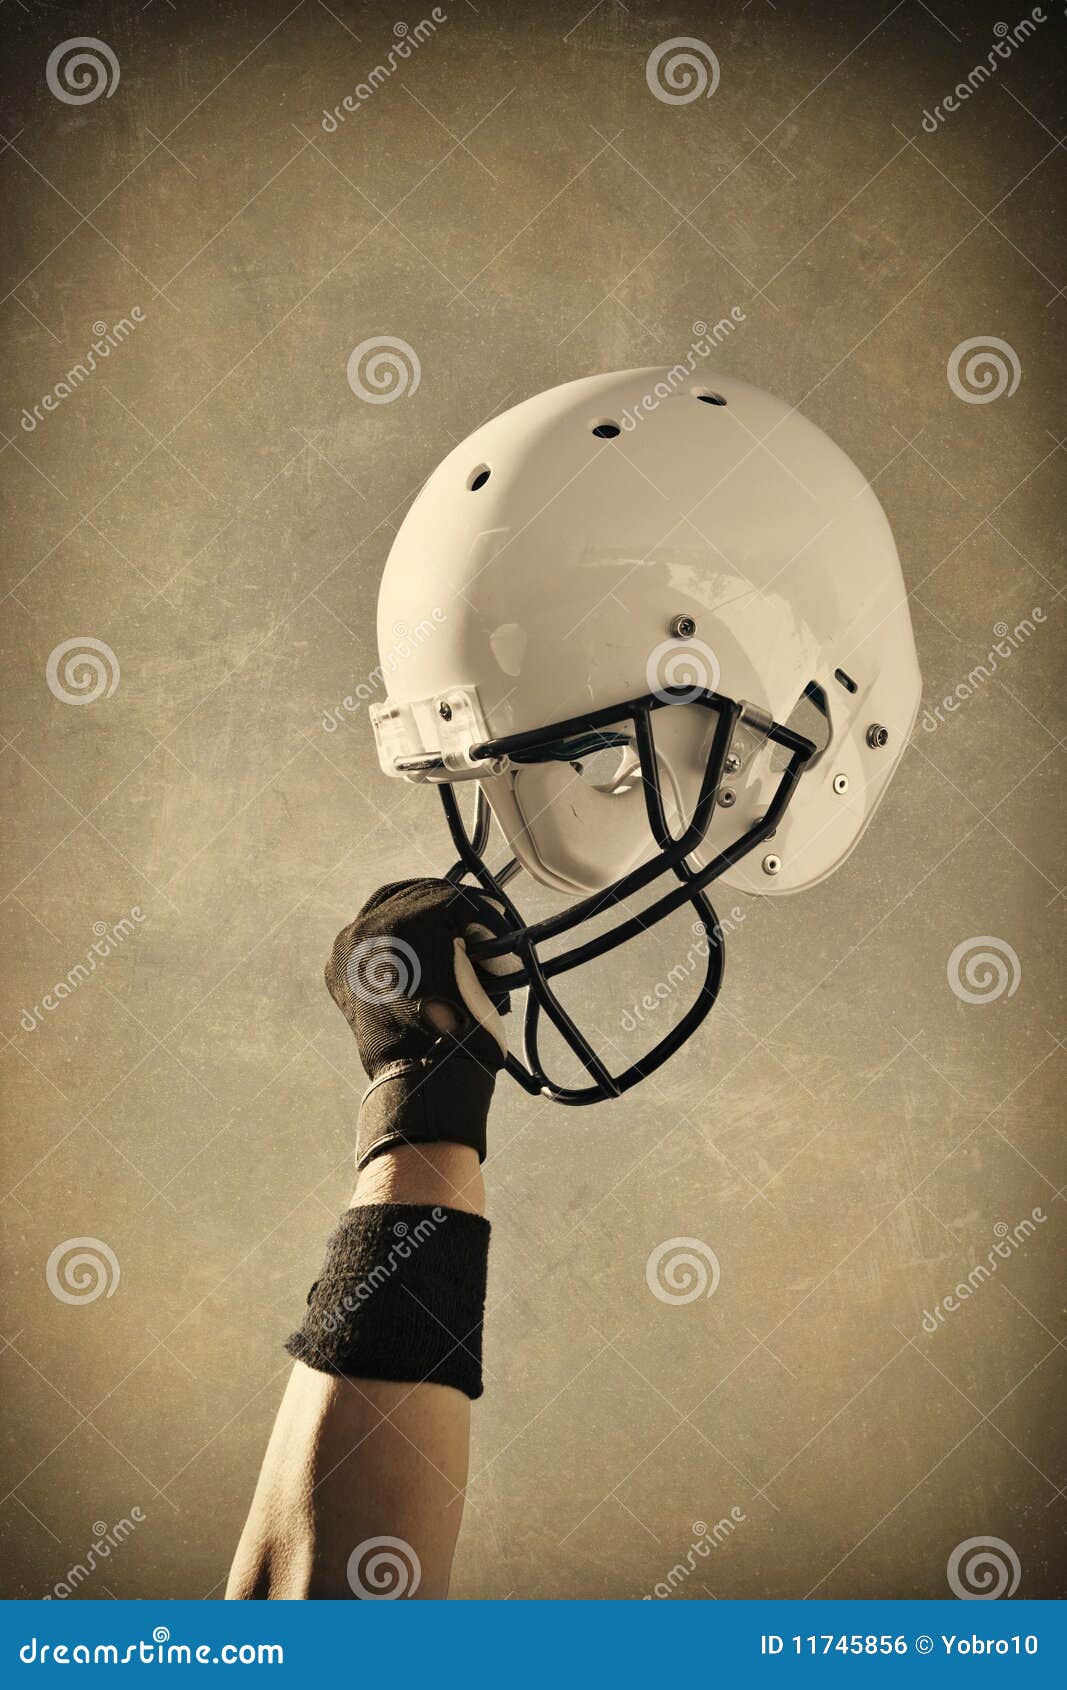 football helmet sepia toned